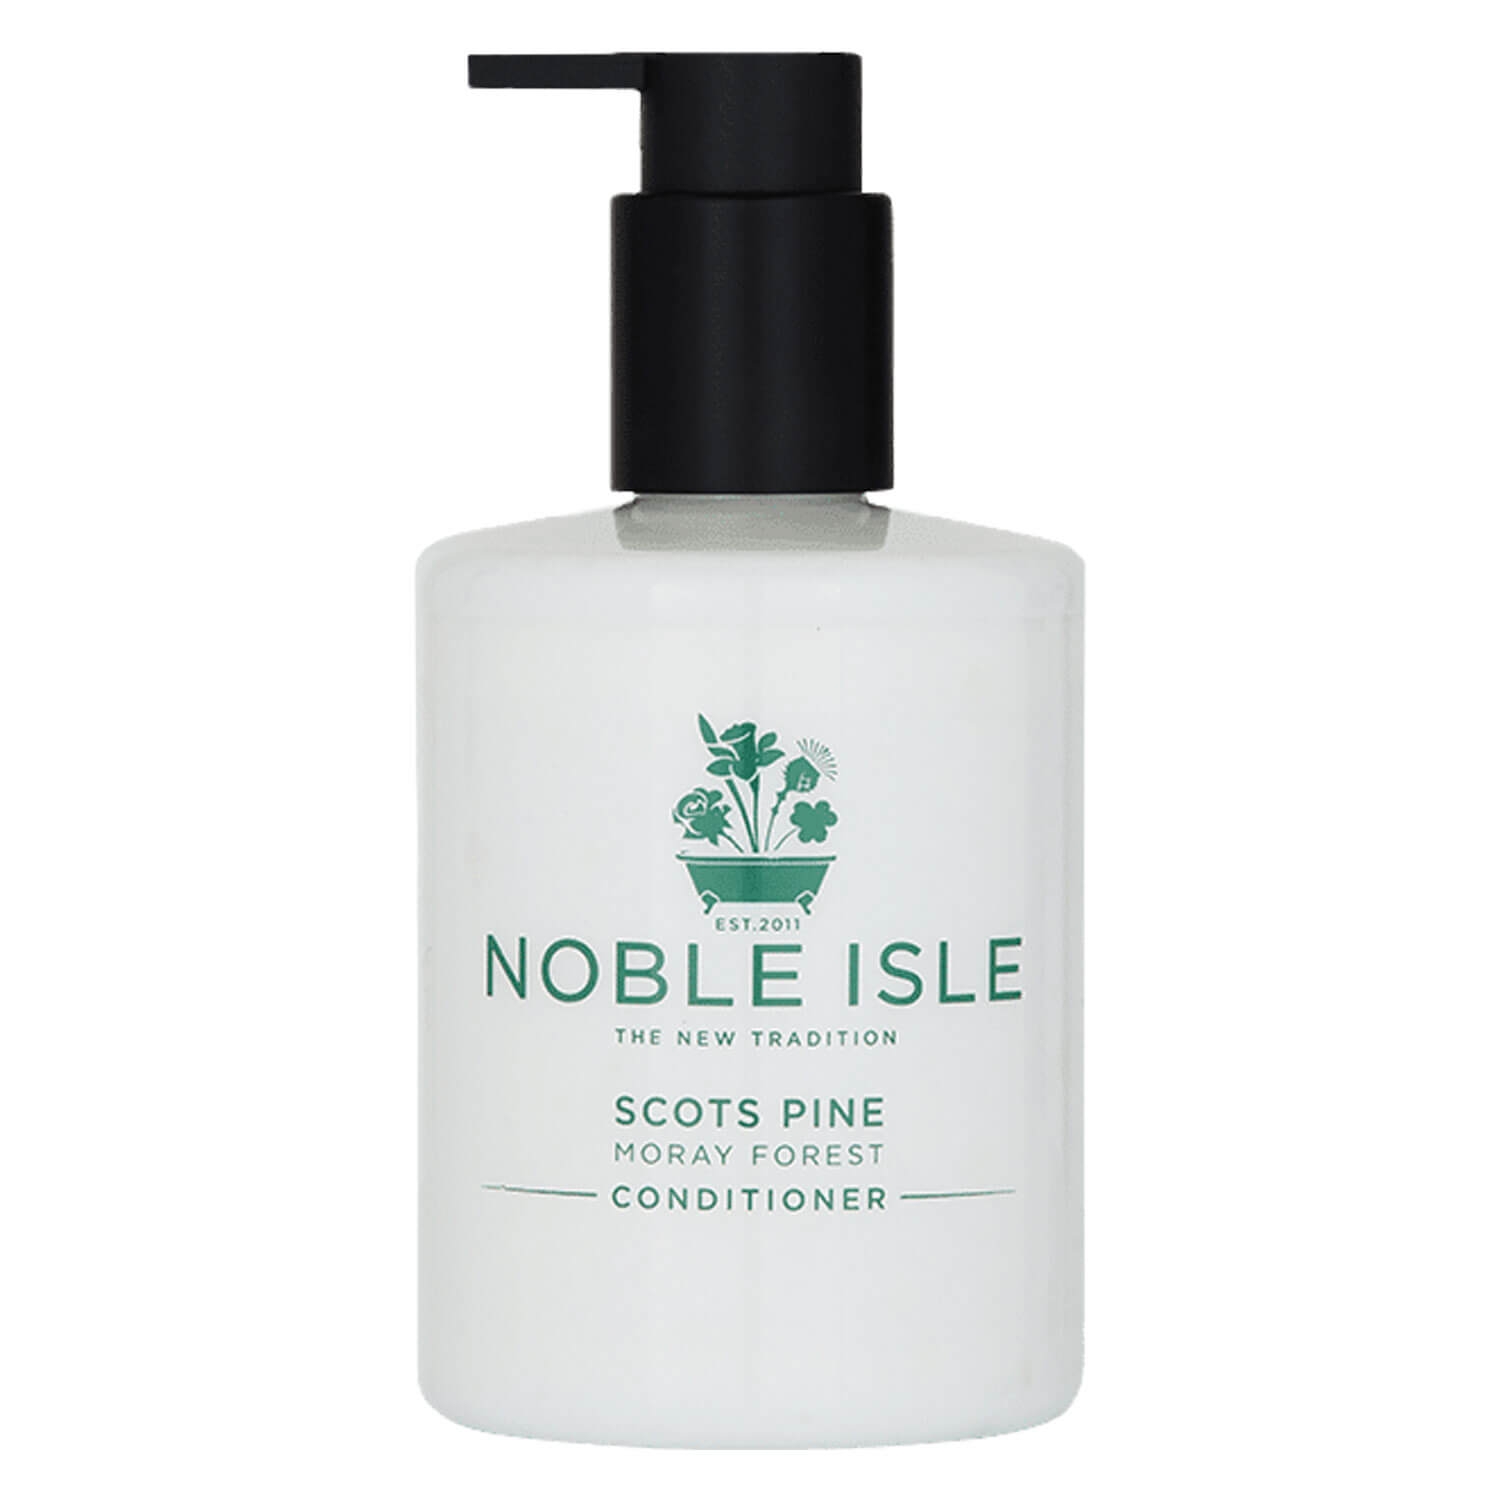 Produktbild von Noble Isle - Scots Pine Conditioner